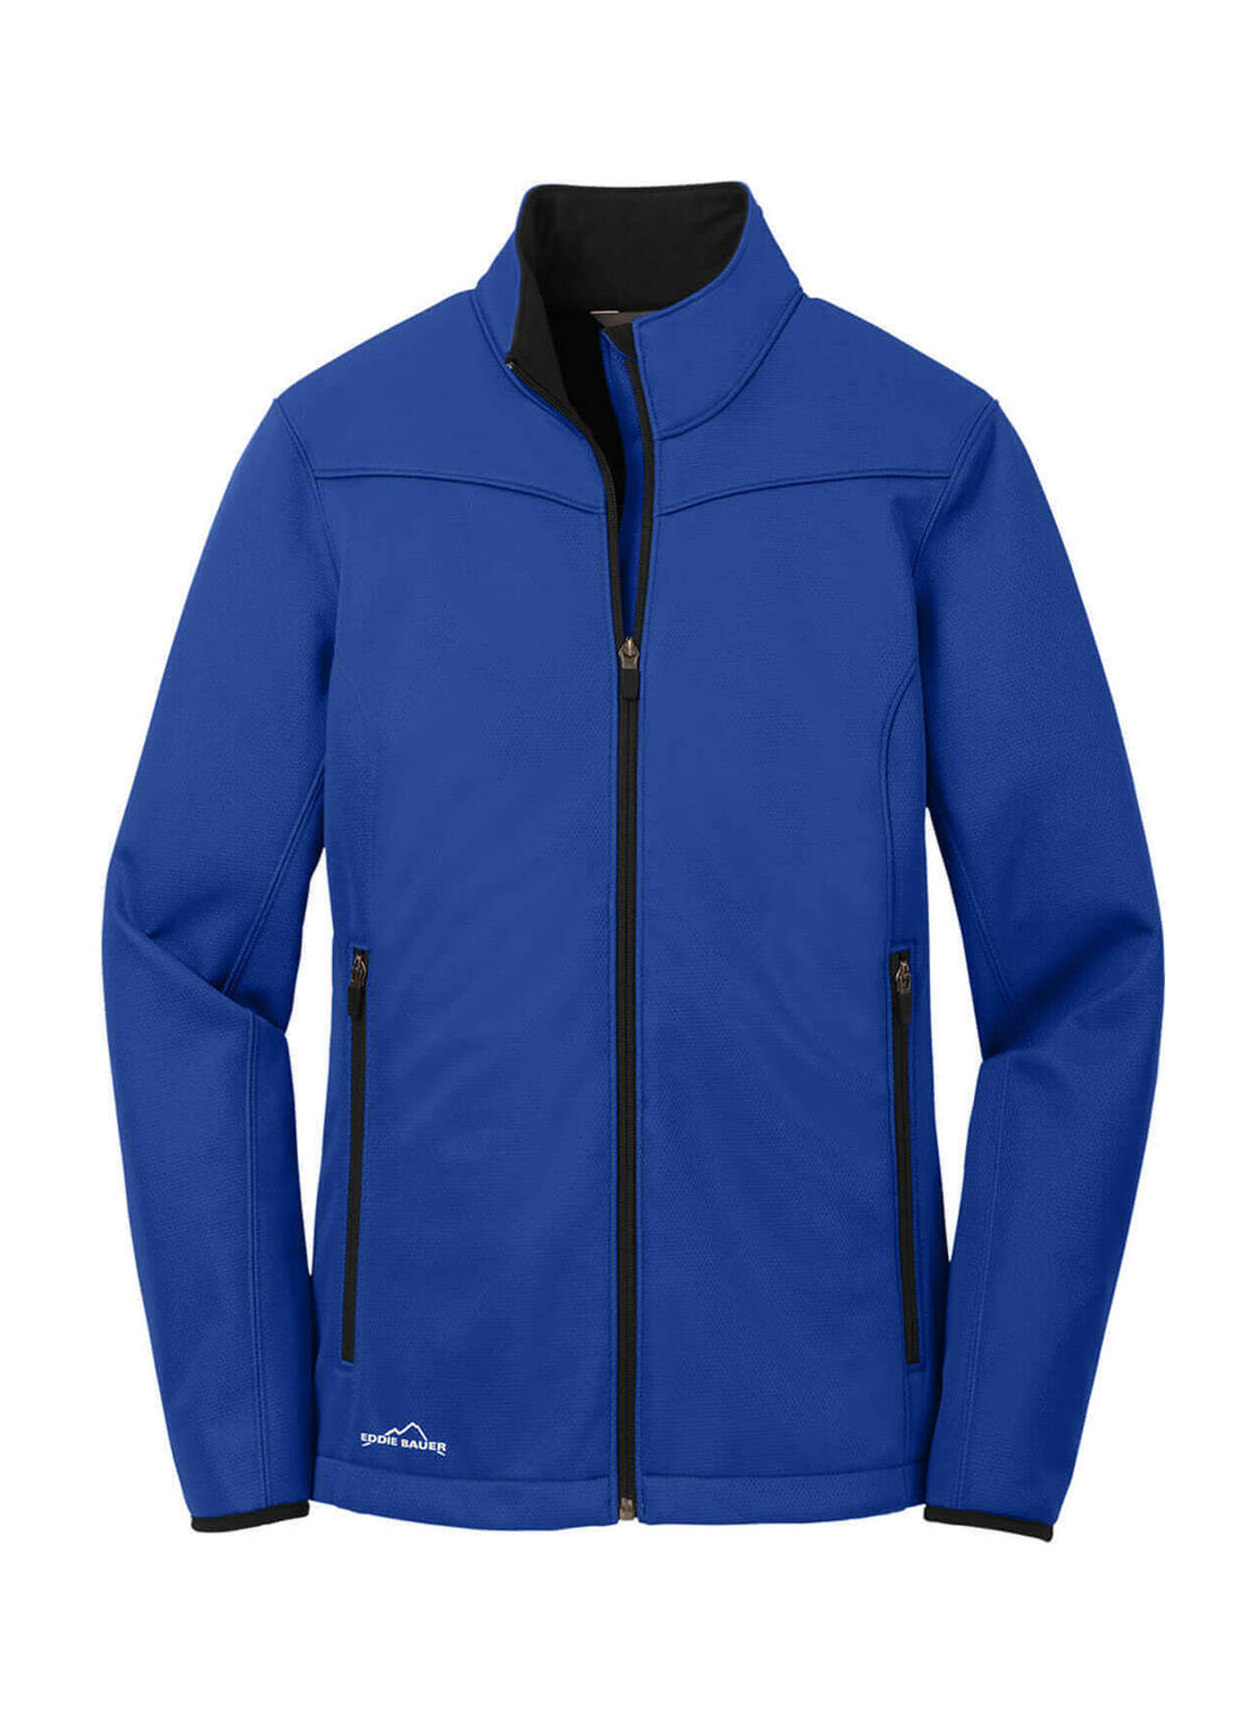 Eddie Bauer Women's Cobalt Blue Weather-Resist Soft Shell Jacket